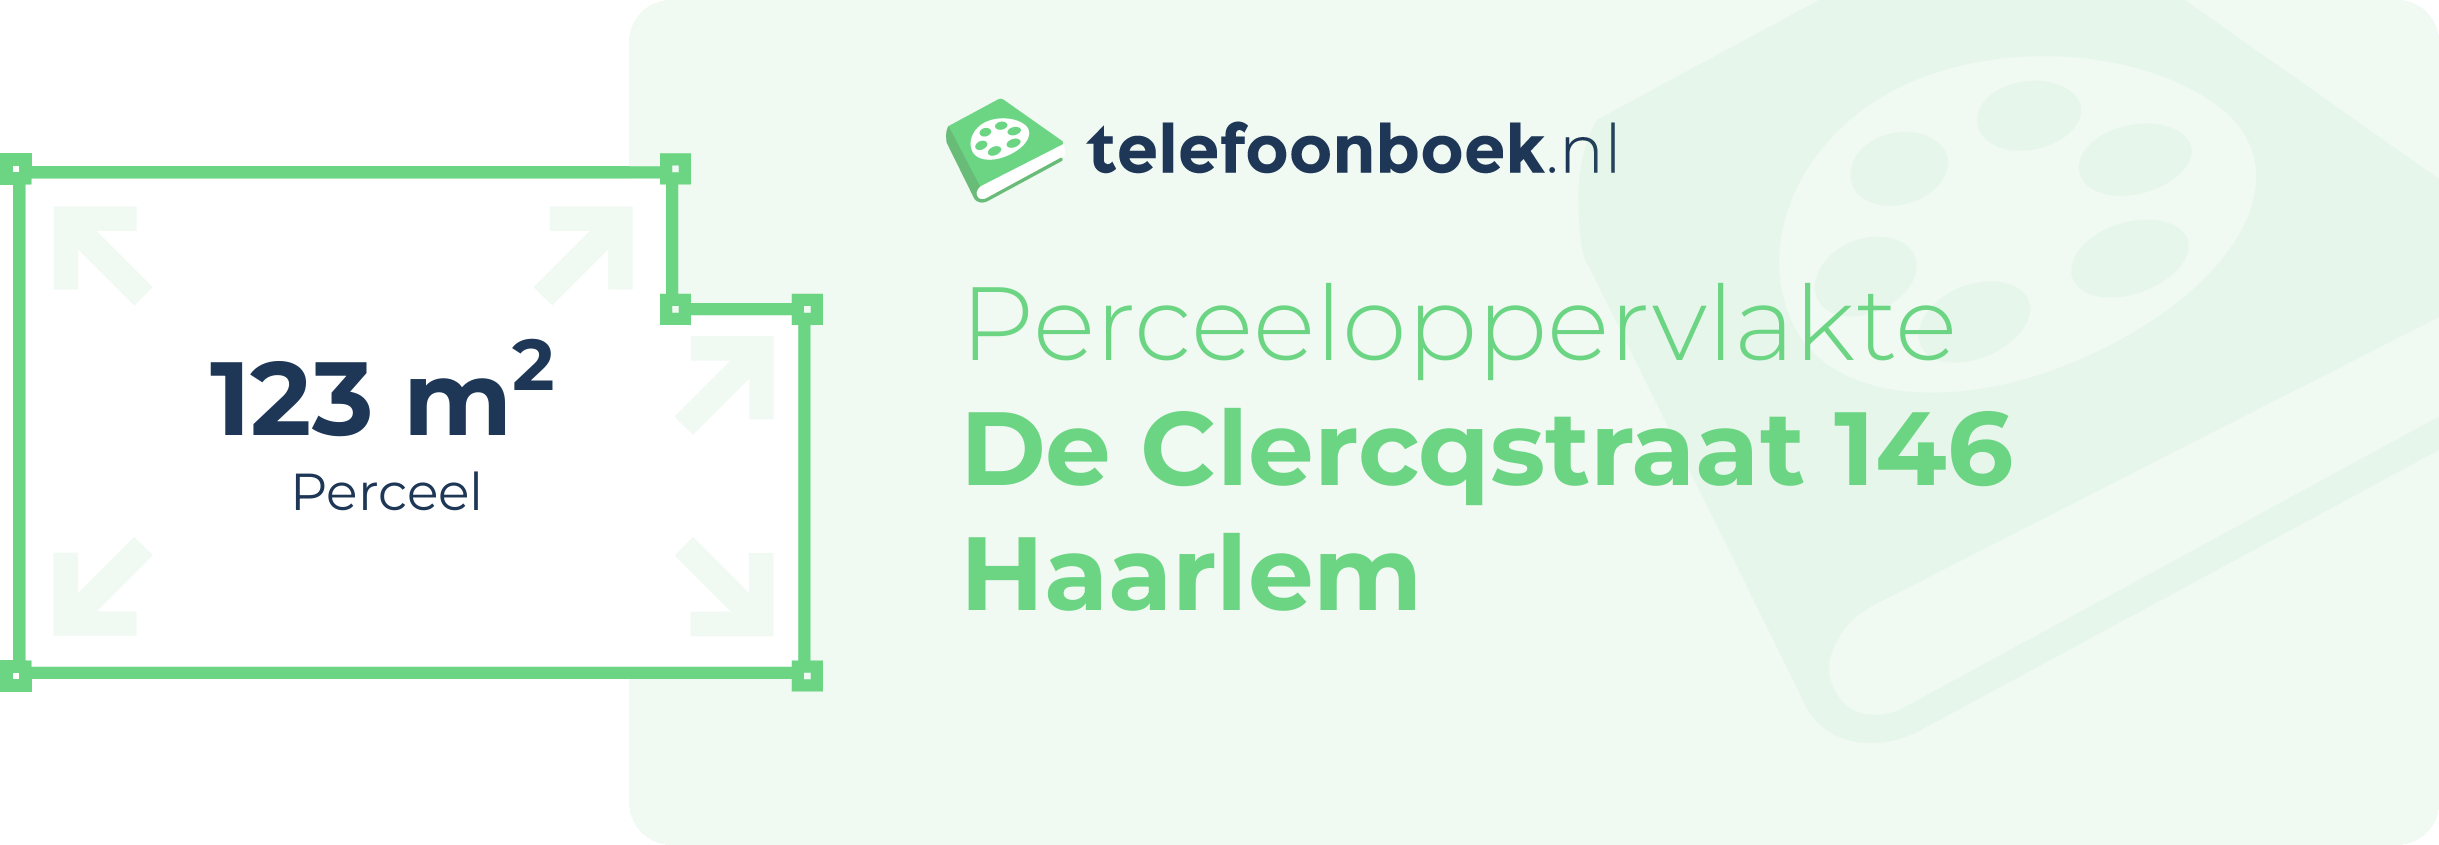 Perceeloppervlakte De Clercqstraat 146 Haarlem